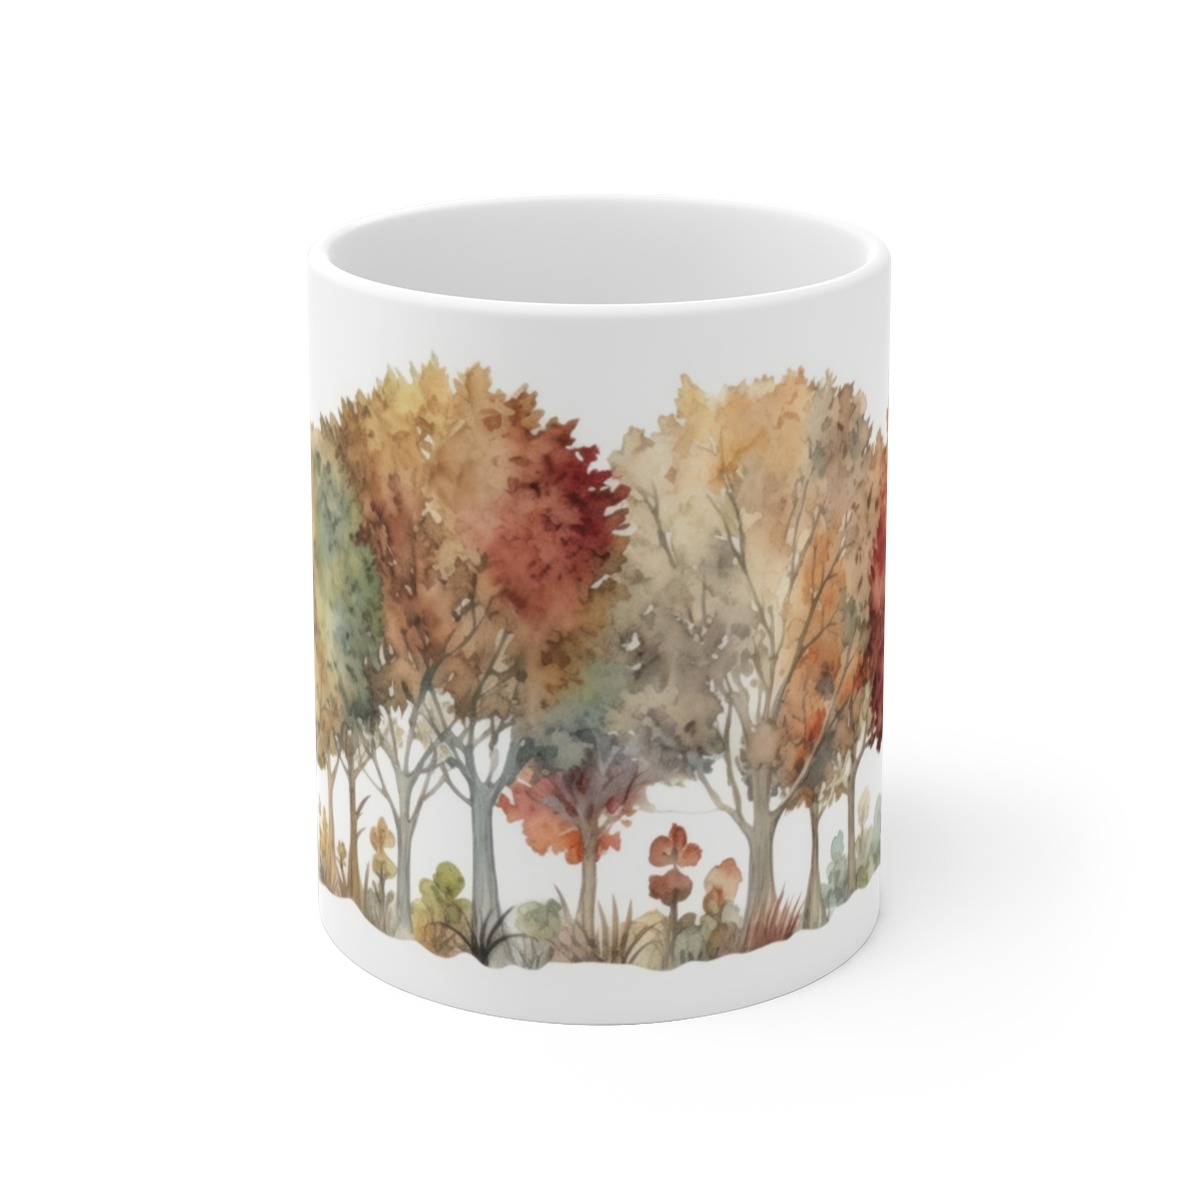 Herbstlich inspirierte Keramiktasse mit Aquarell-Laubbäumen